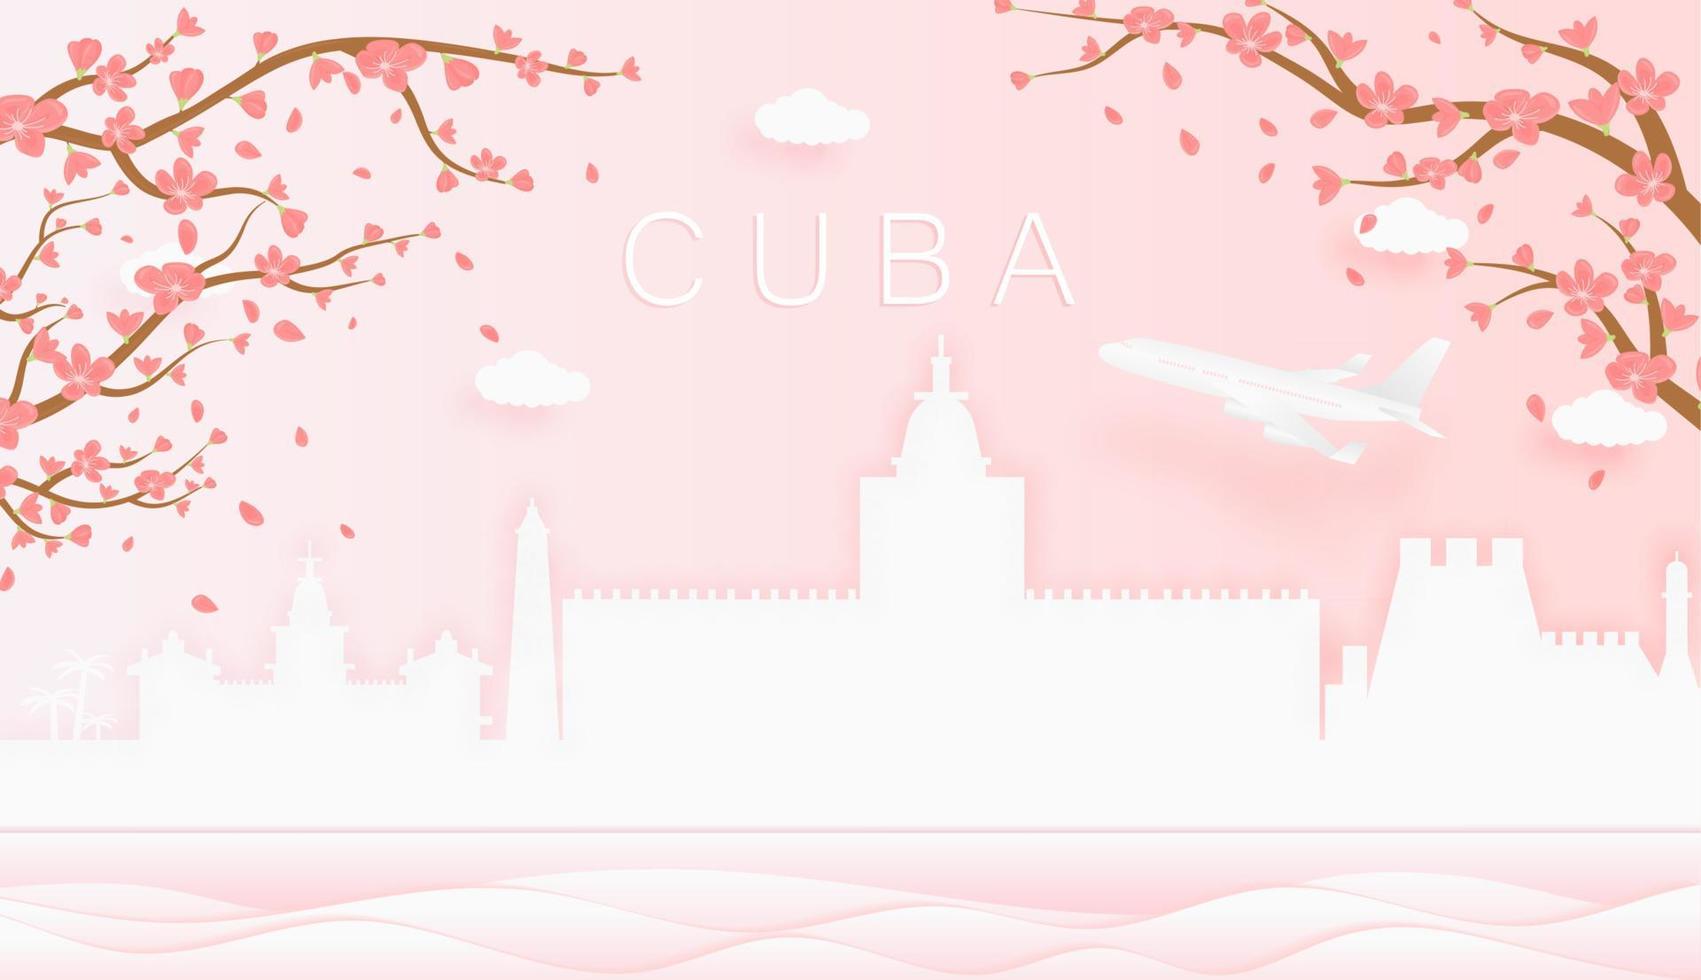 Panorama Reise Postkarte, Poster, Tour Werbung von Welt berühmt Sehenswürdigkeiten von Kuba, Frühling Jahreszeit mit Blühen Blumen im Baum vektor